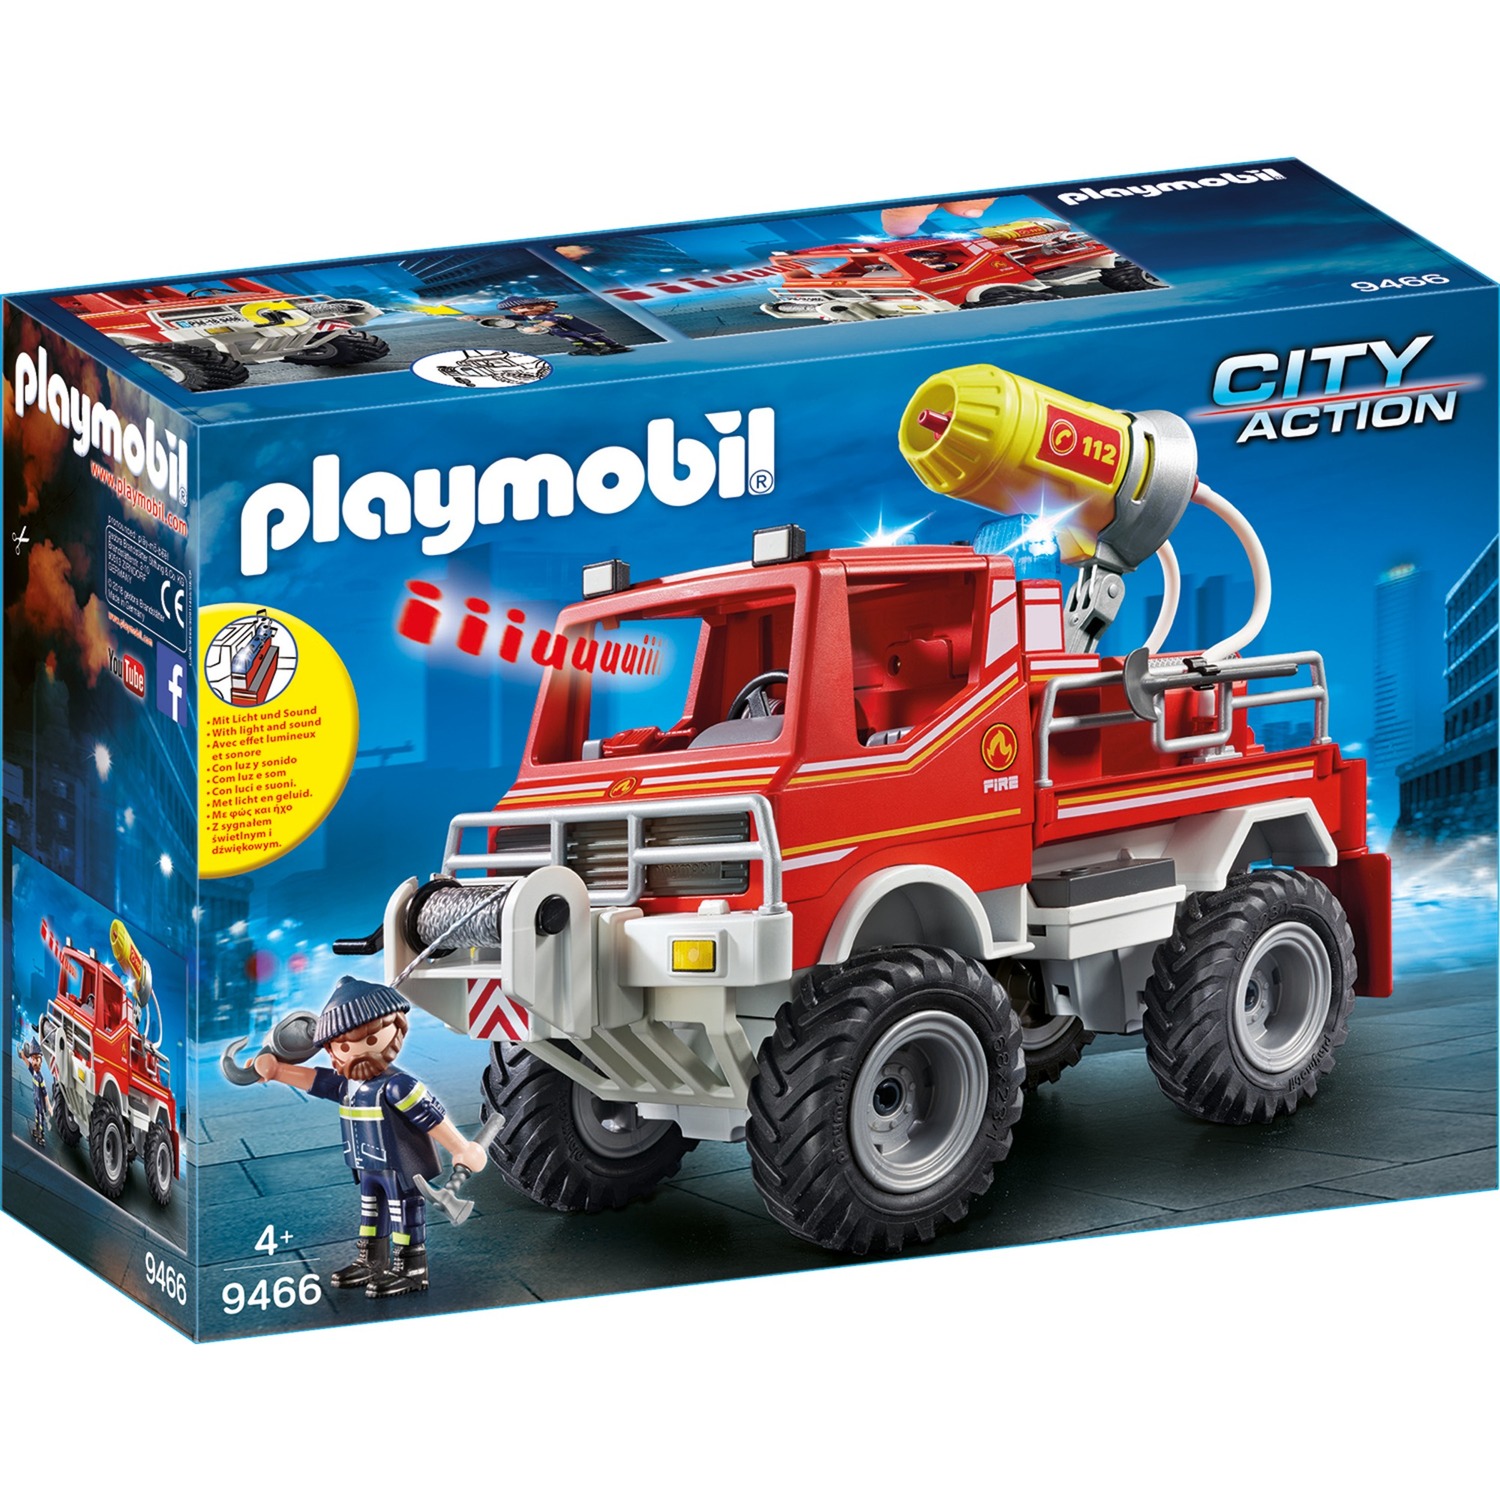 9466 City Action Feuerwehr-Truck, Konstruktionsspielzeug